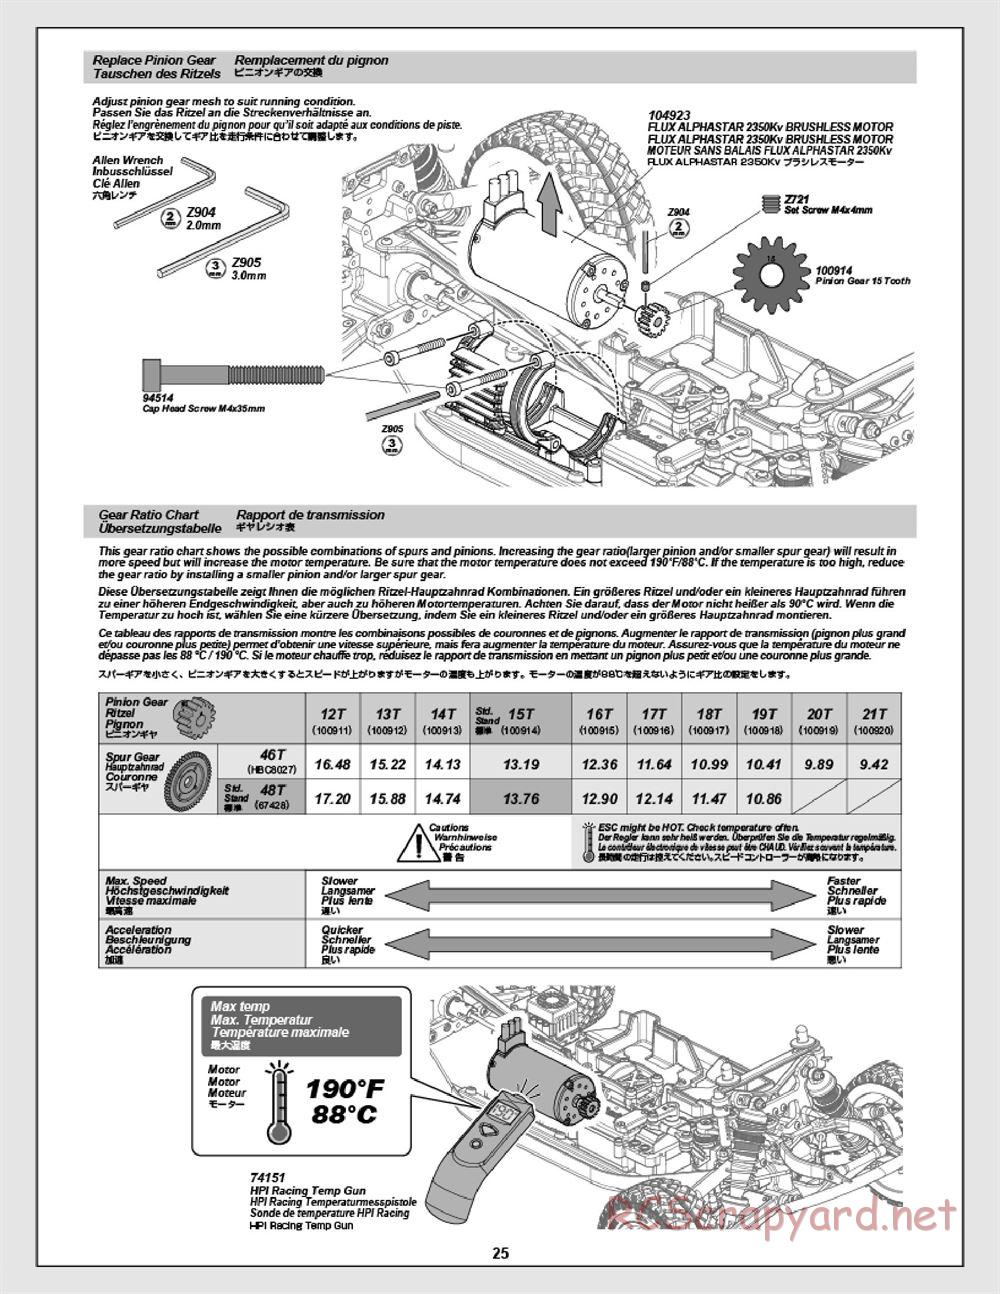 HPI - Apache SC Flux - Manual - Page 25